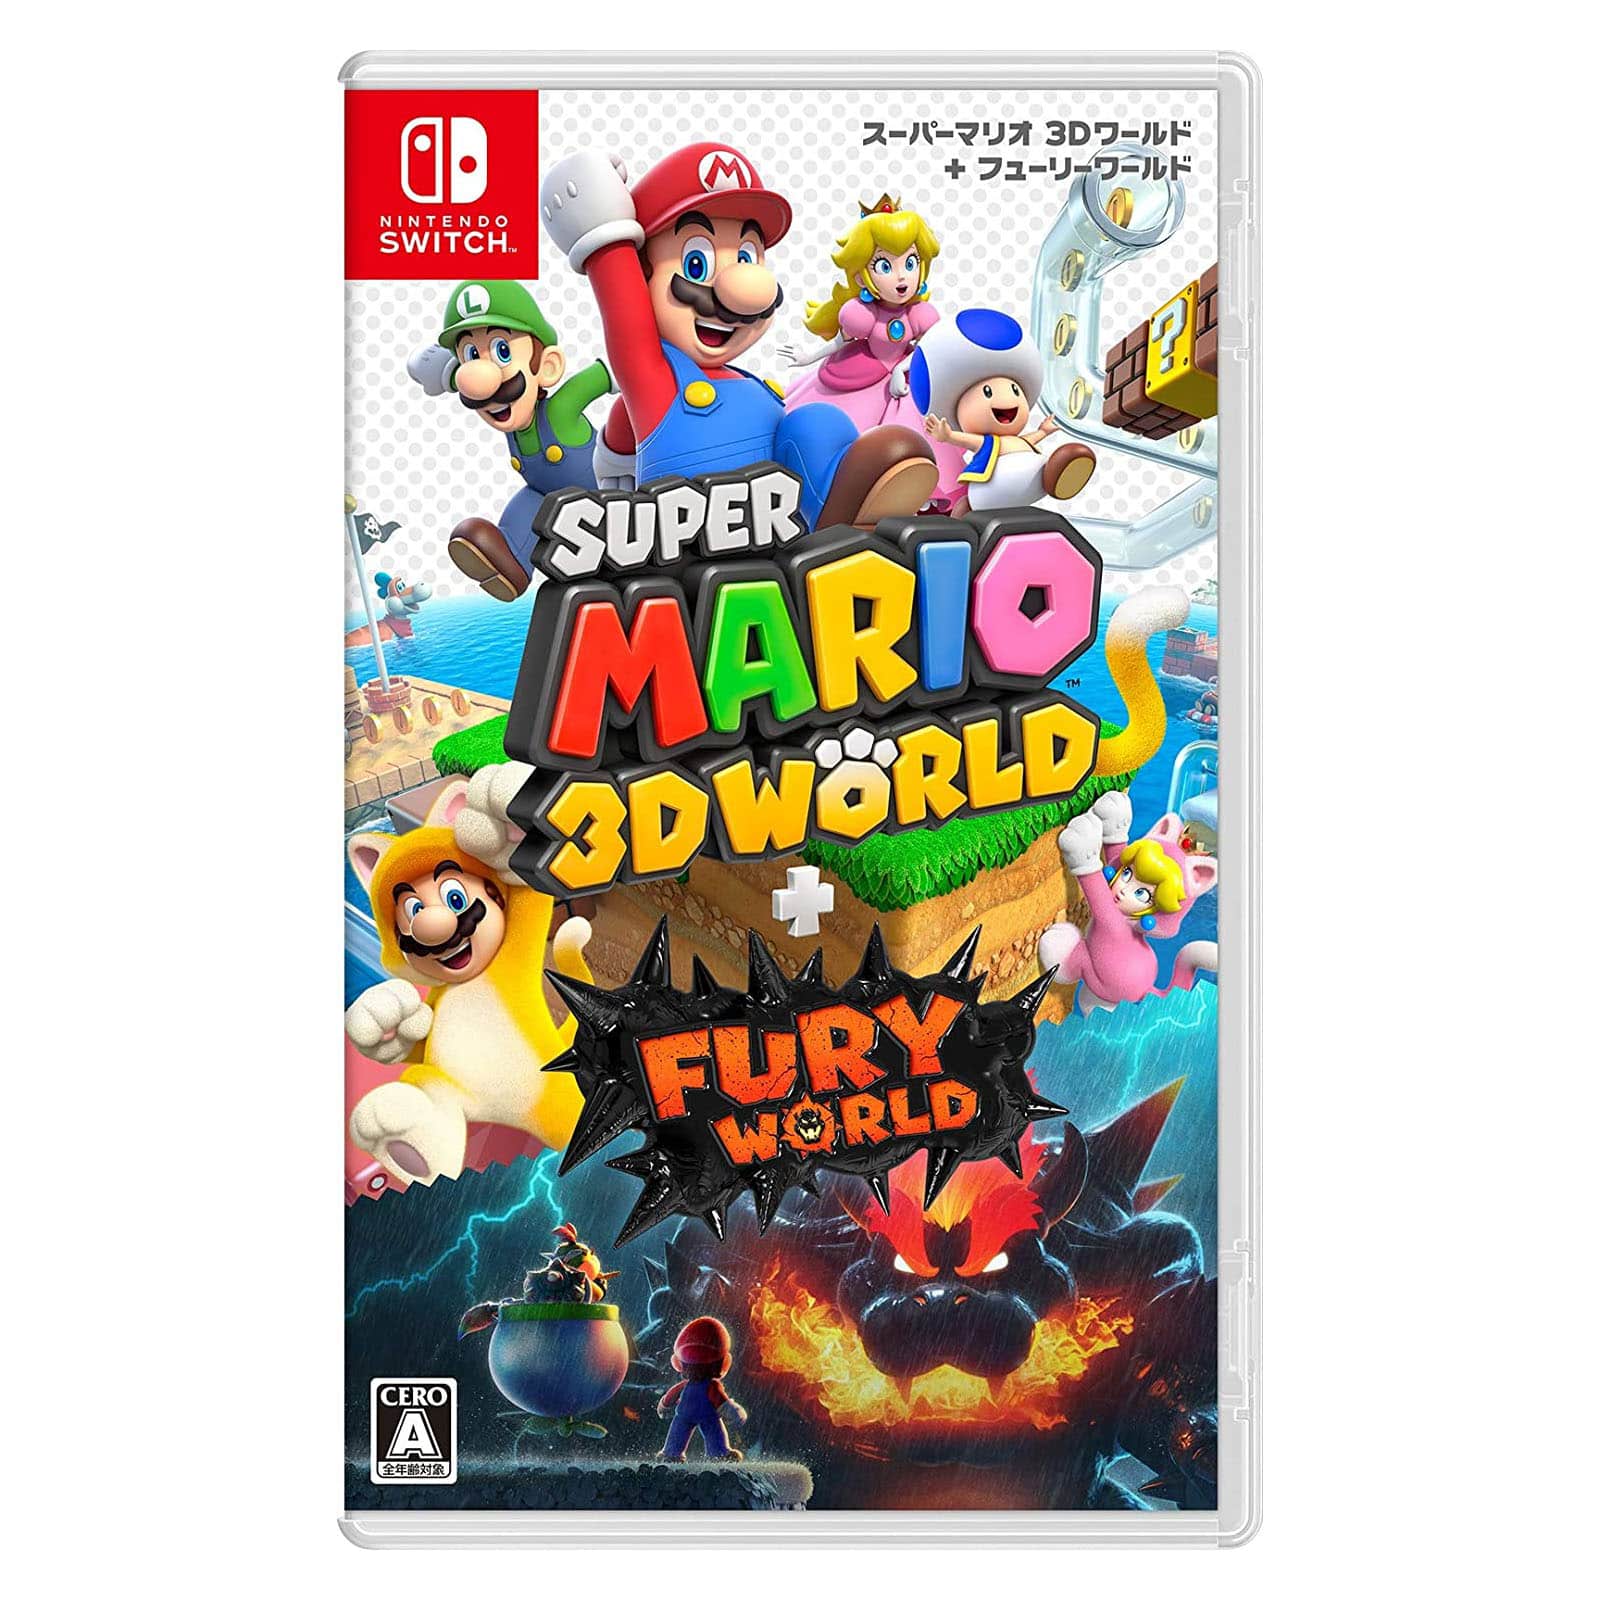 スーパーマリオ 3dワールド フューリーワールド が1位 今一番売れている Nintendo Switchゲームソフト Amazonランキングtop10 2 16 12 19 1 2 ねとらぼ調査隊